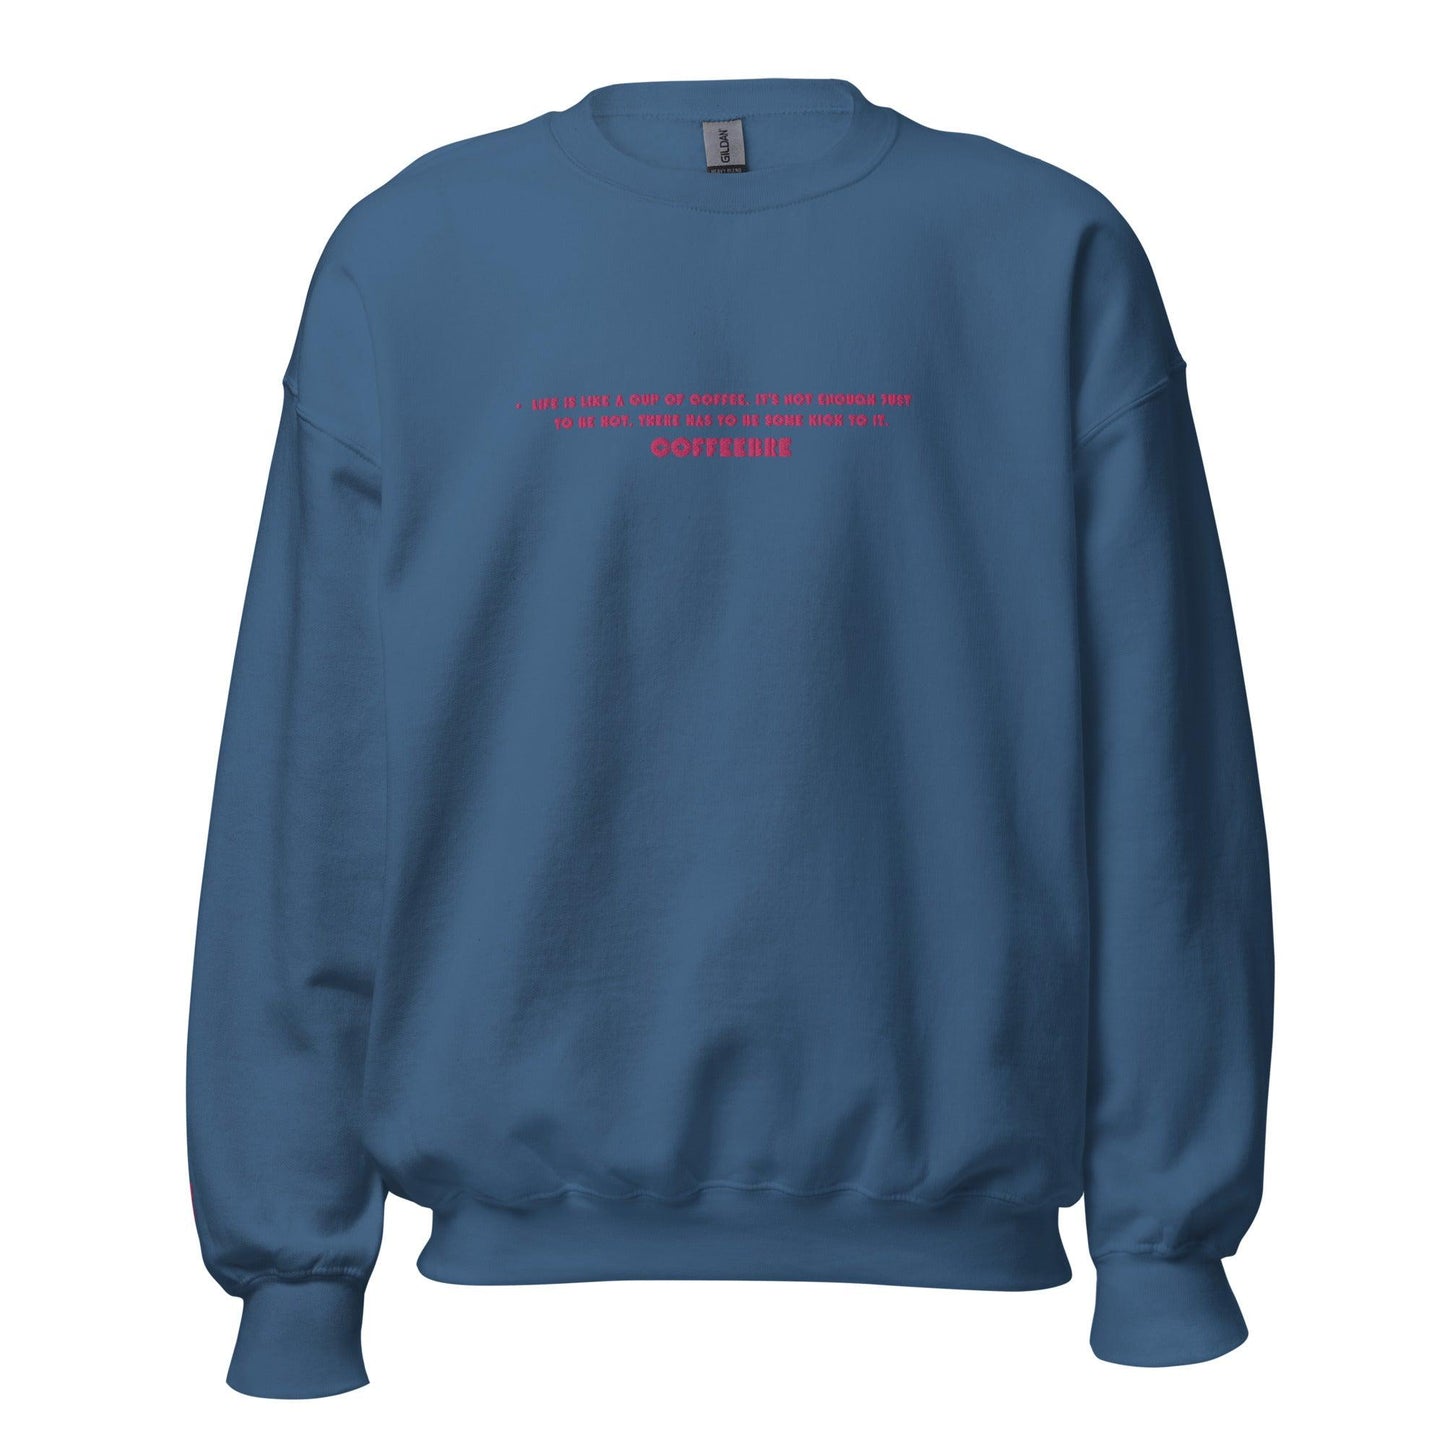 Embroidered Unisex Yoga Sweatshirts - COFFEEBRE